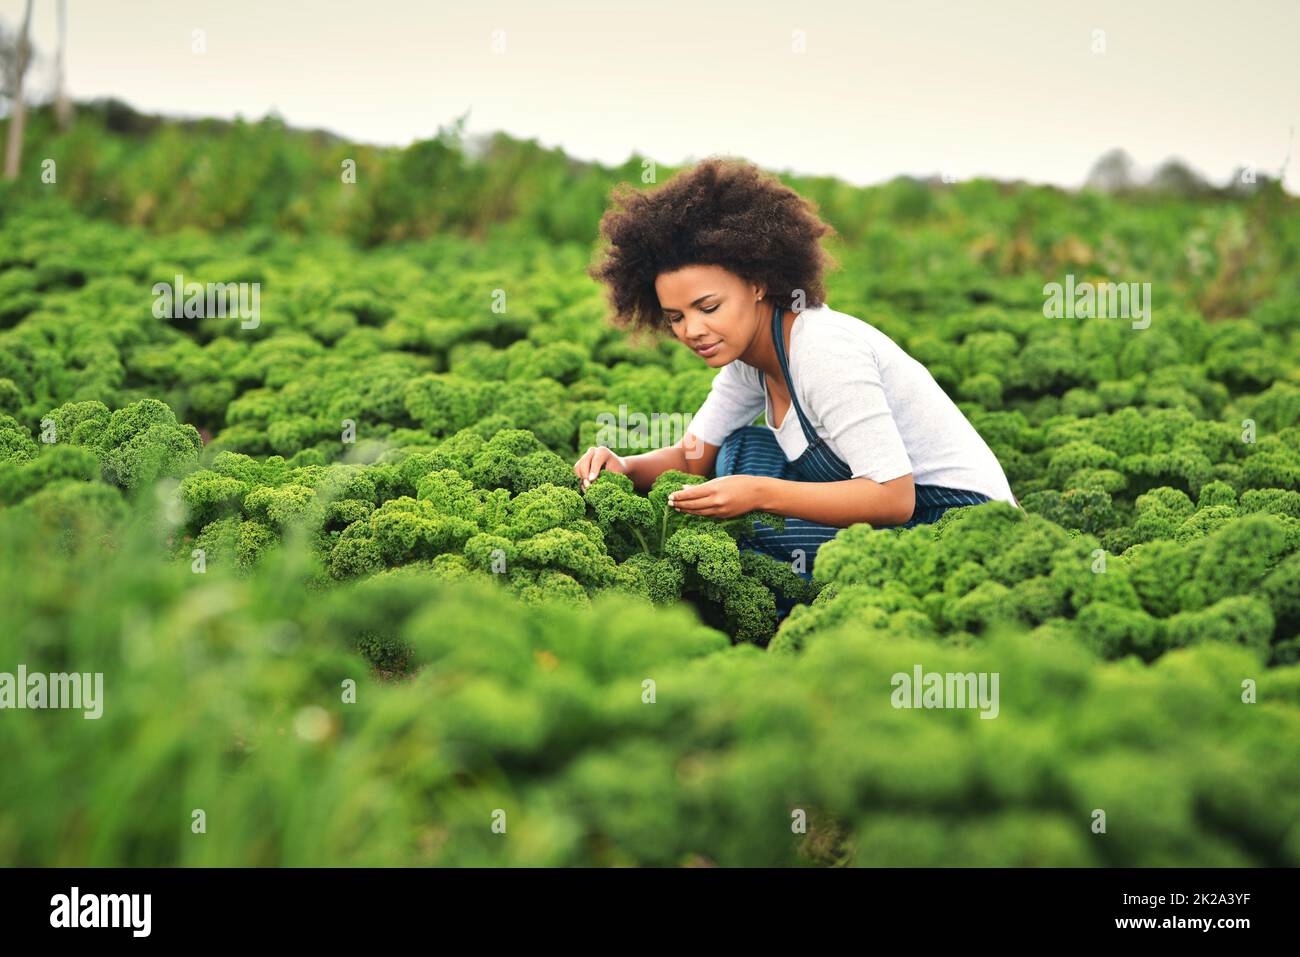 Doigts verts. Photo d'une jeune agricultrice attirante travaillant dans les champs. Banque D'Images